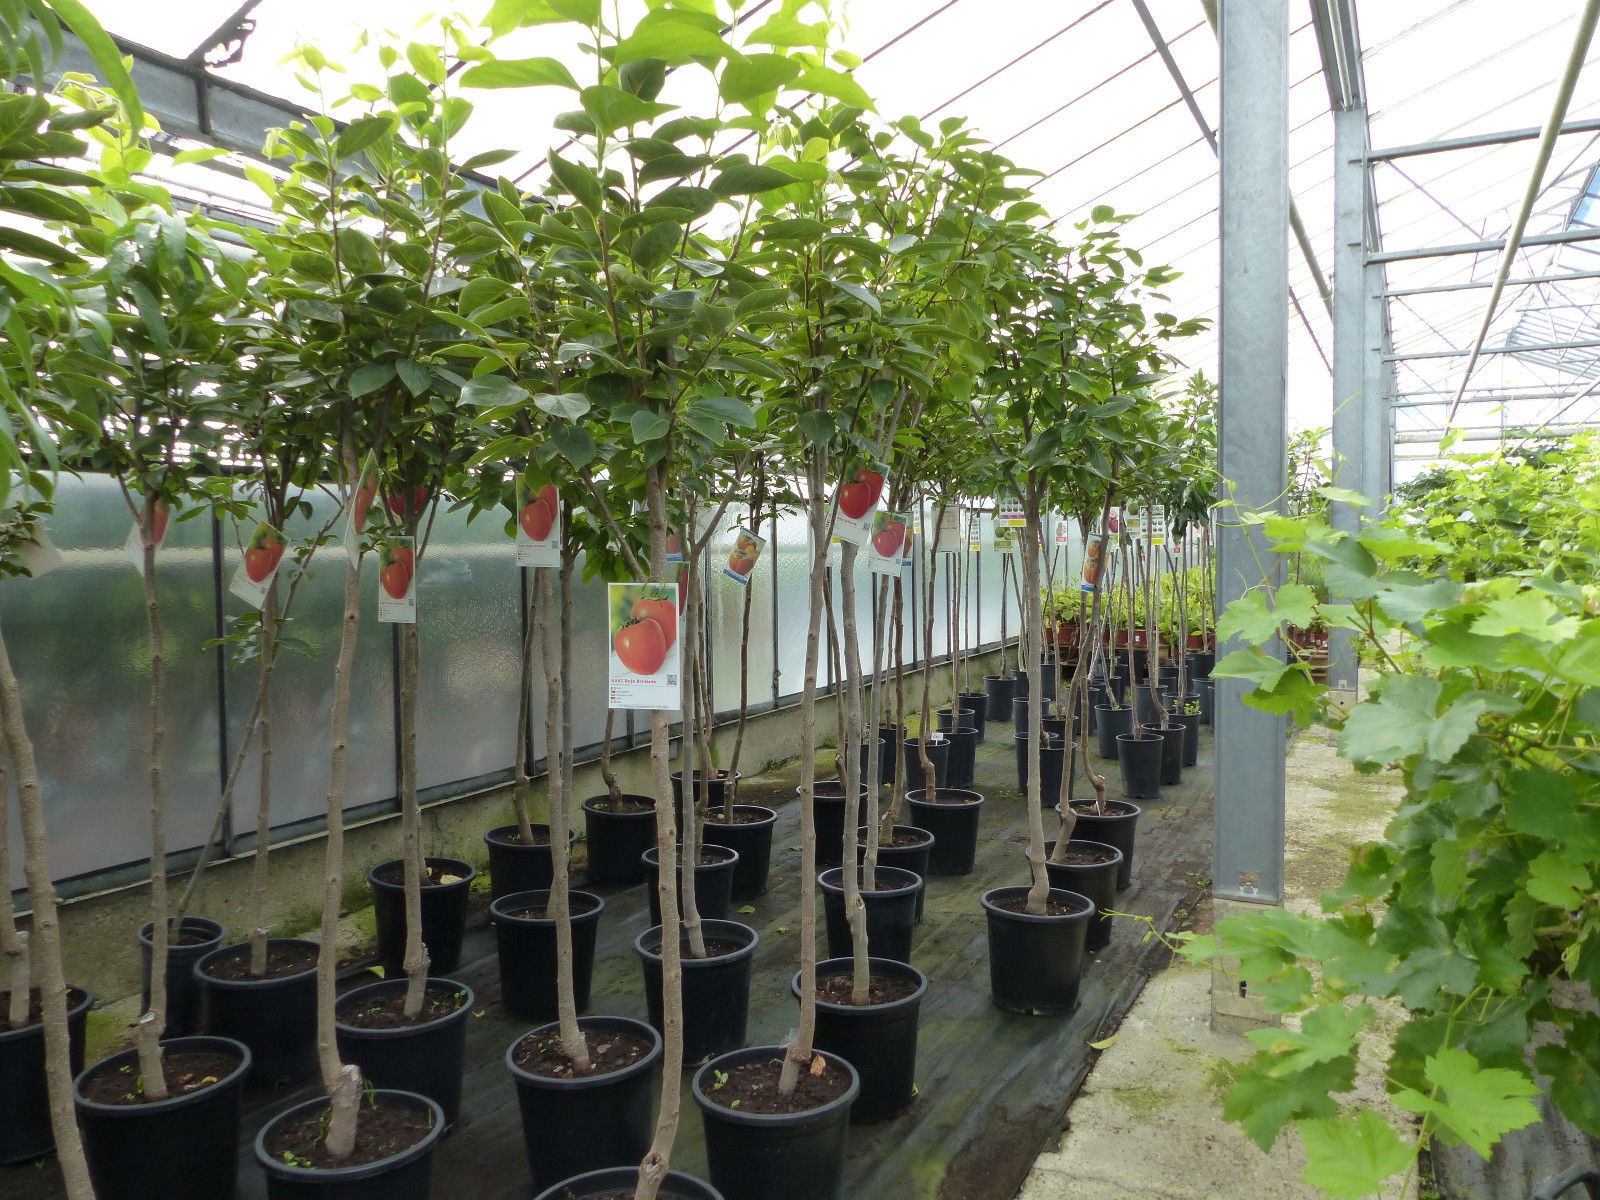 Kaki Baum 160-180 cm Sorte "Rojo Brilliante" Kakipflaume Pflanze